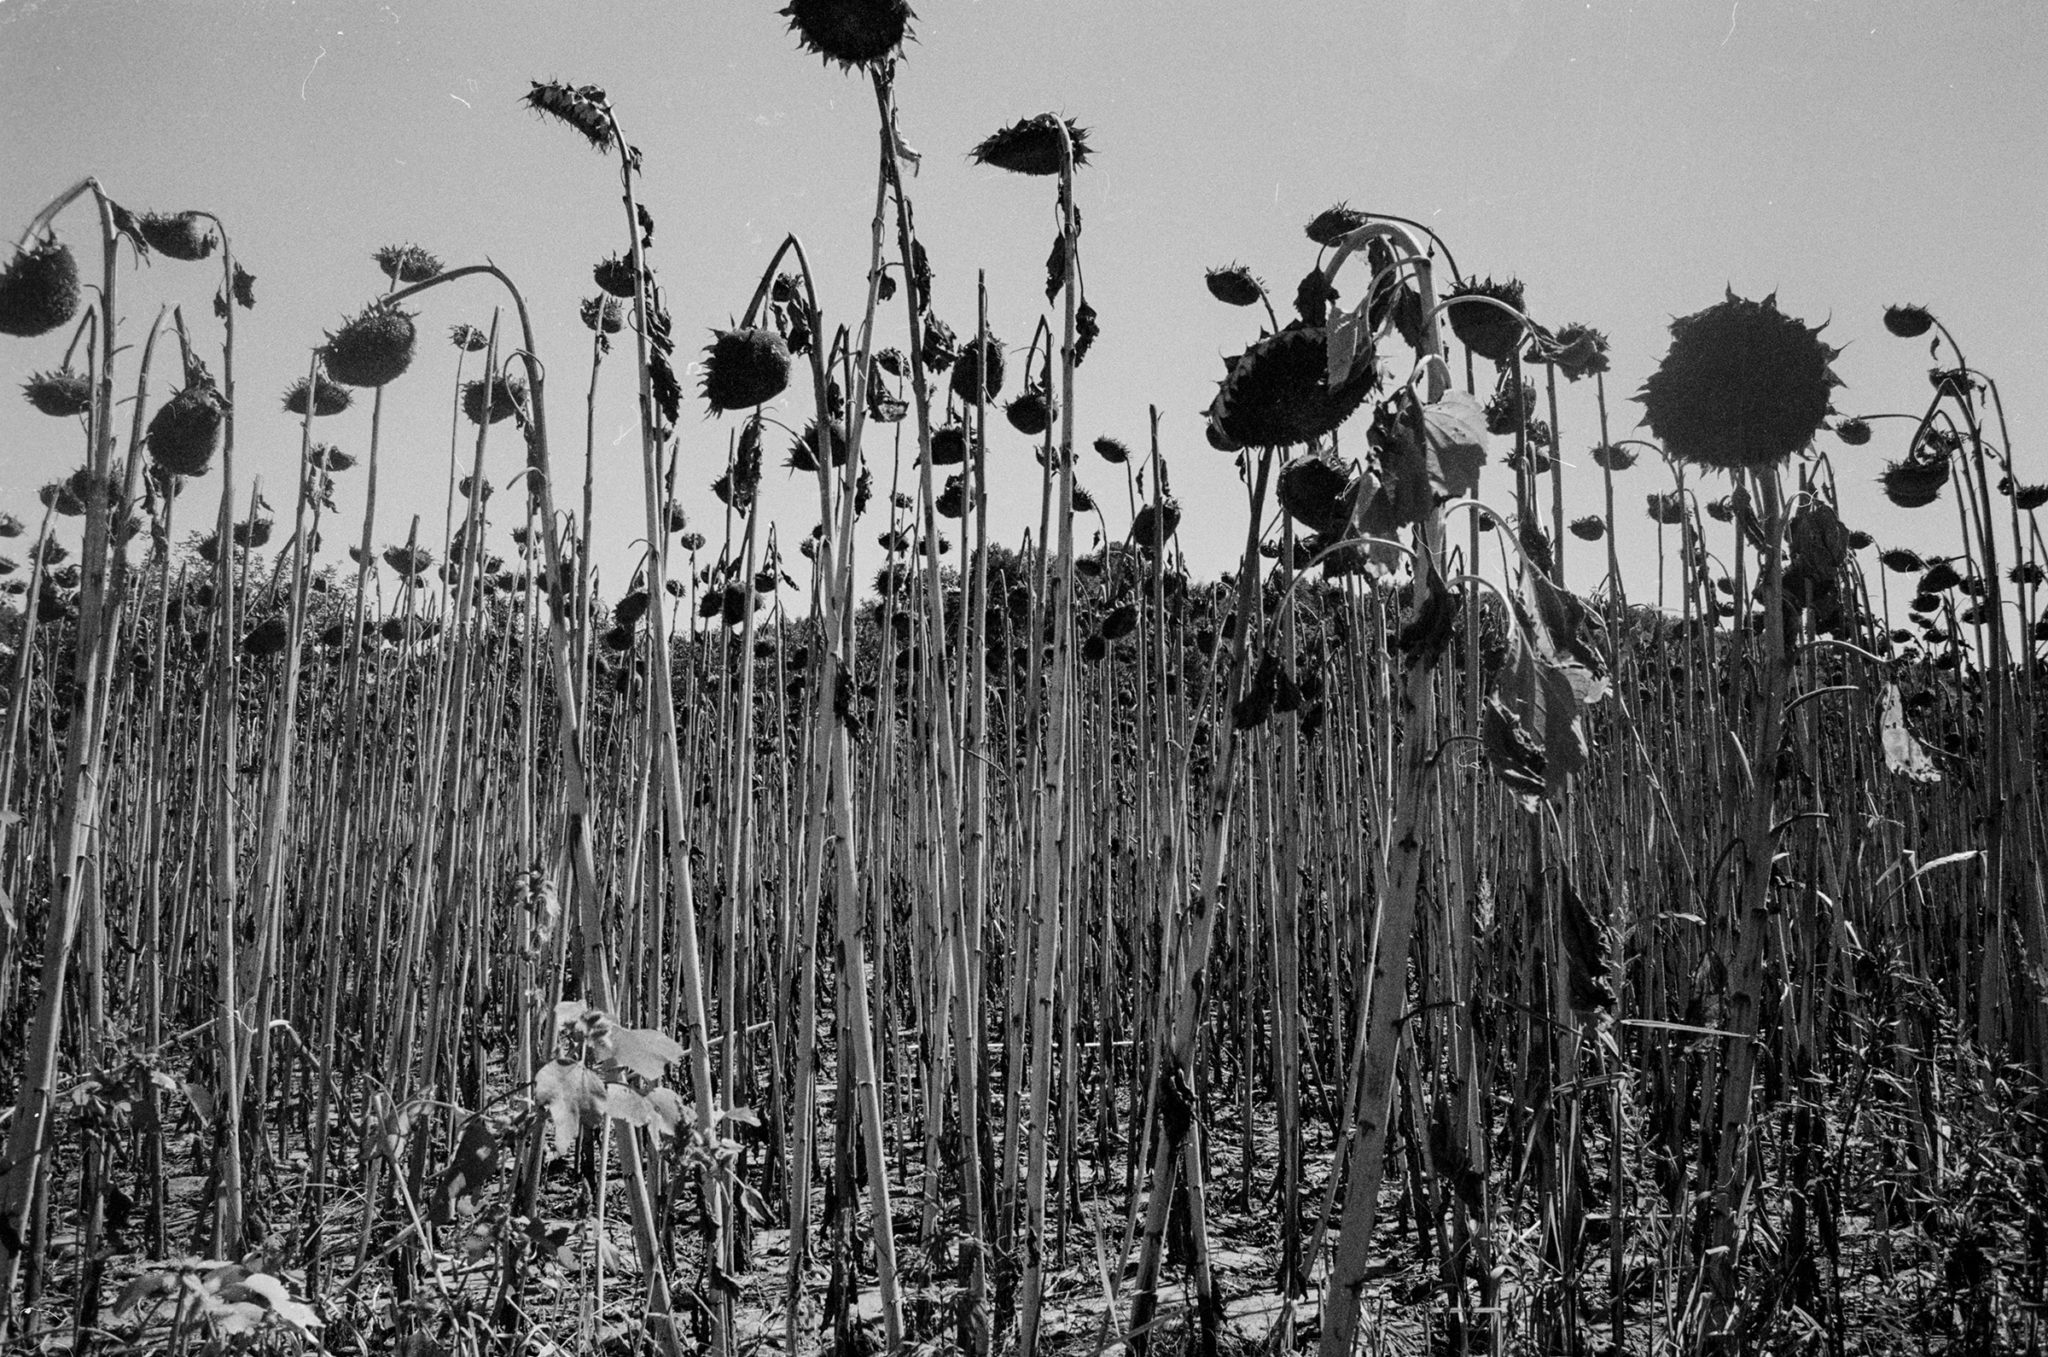 Field of dead sunflowers